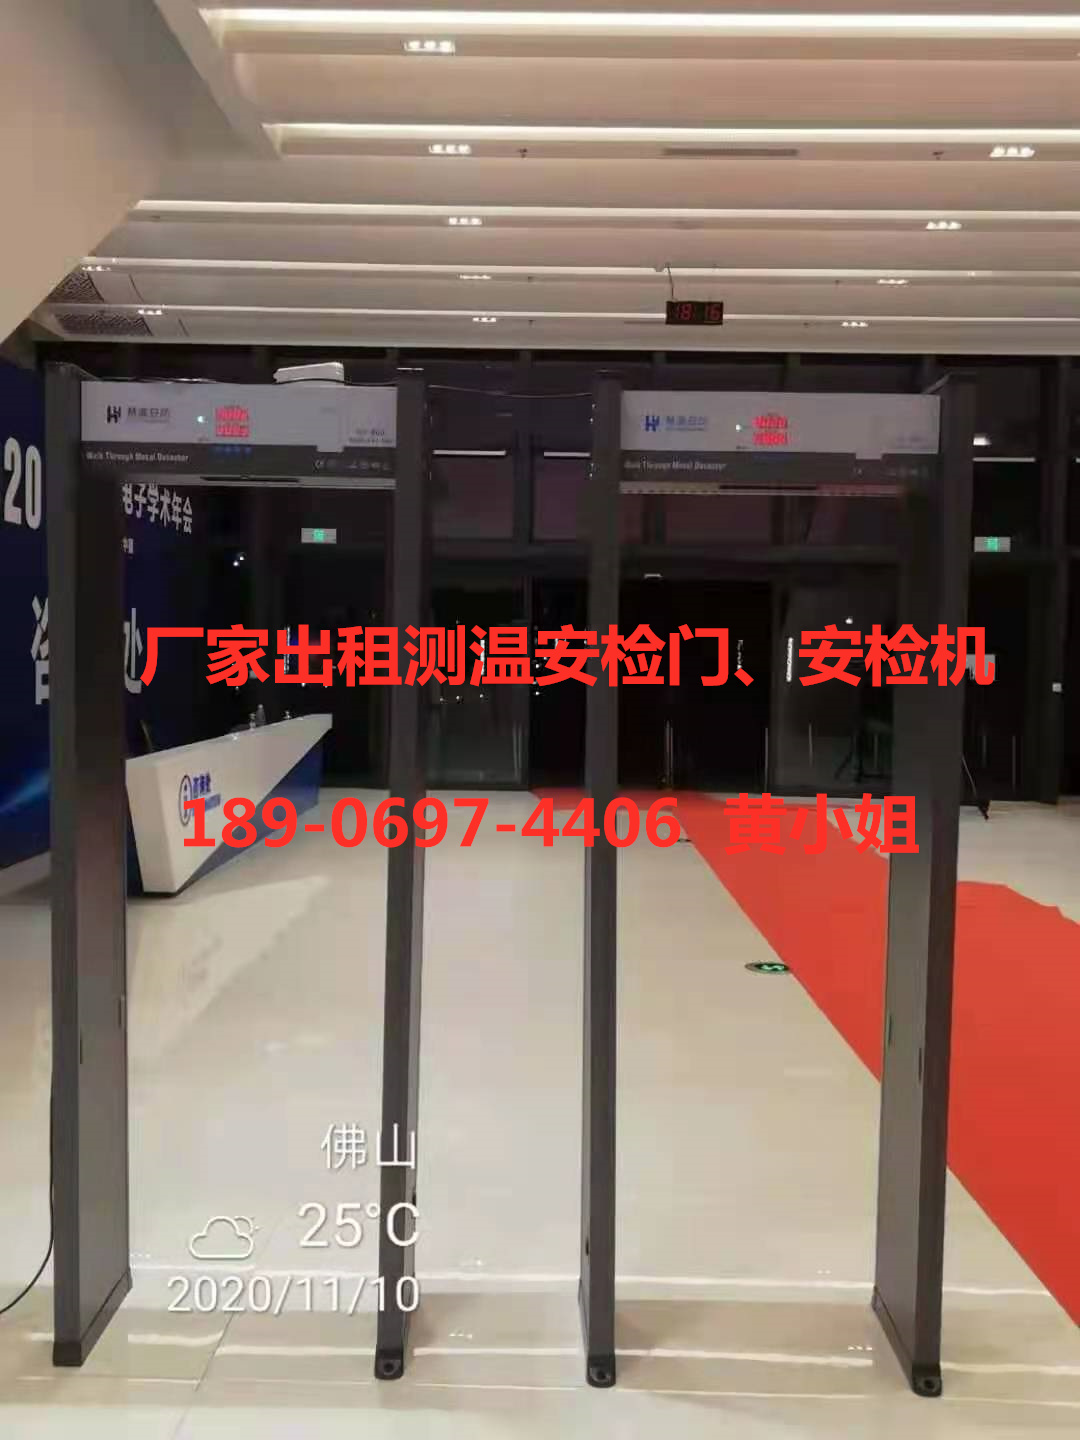 广东广州红外测温安检门出租安检机